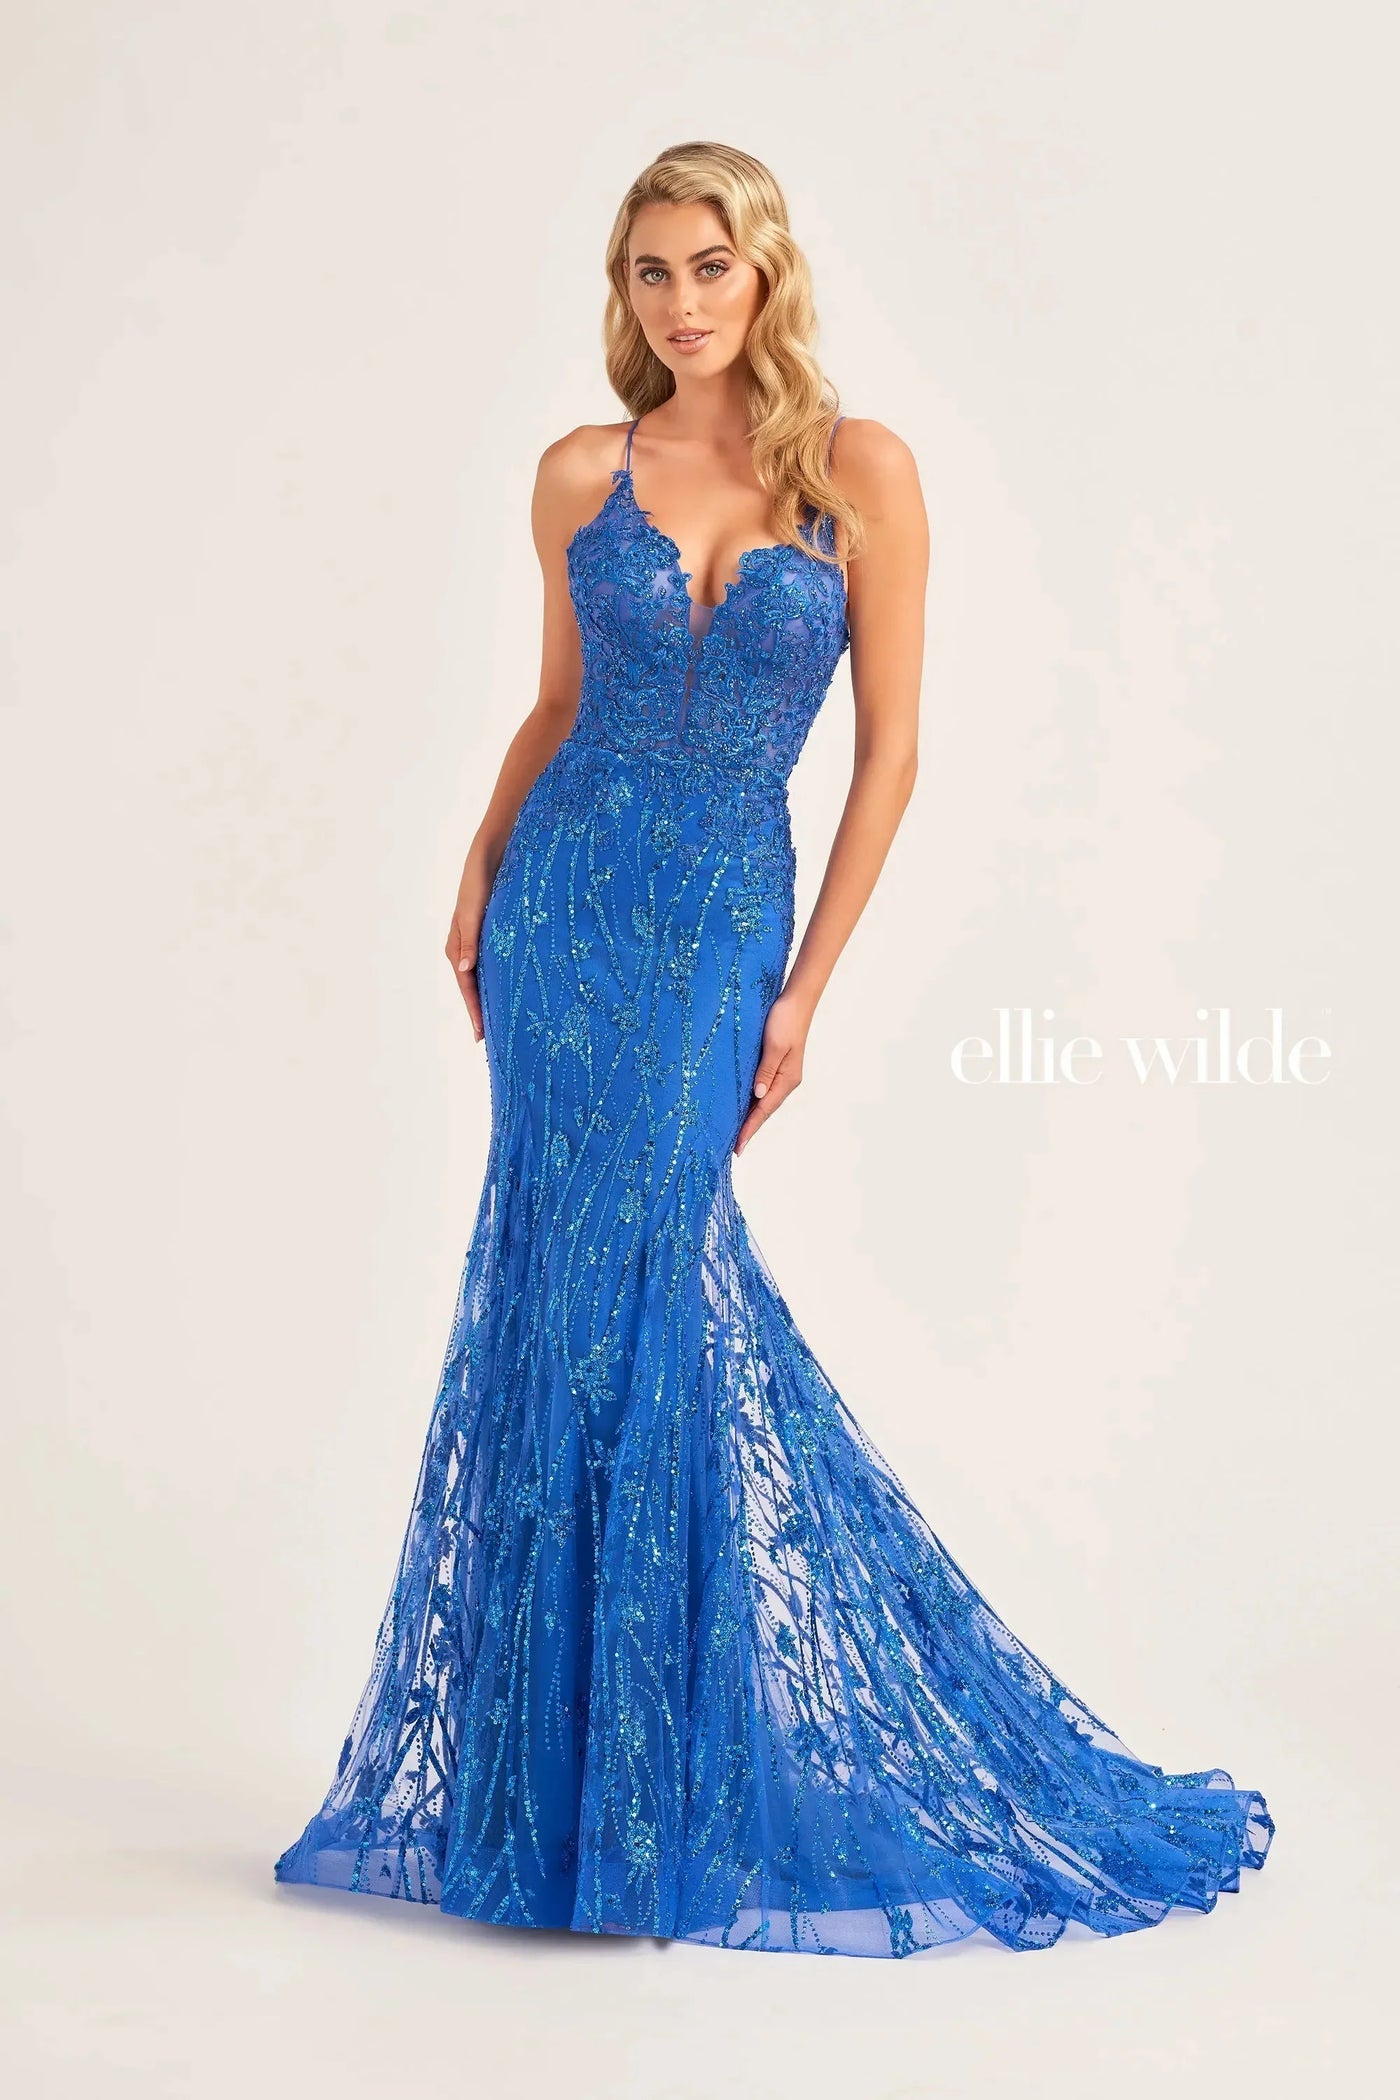 Ellie Wilde EW35104 - Mermaid Embellished Evening Dress